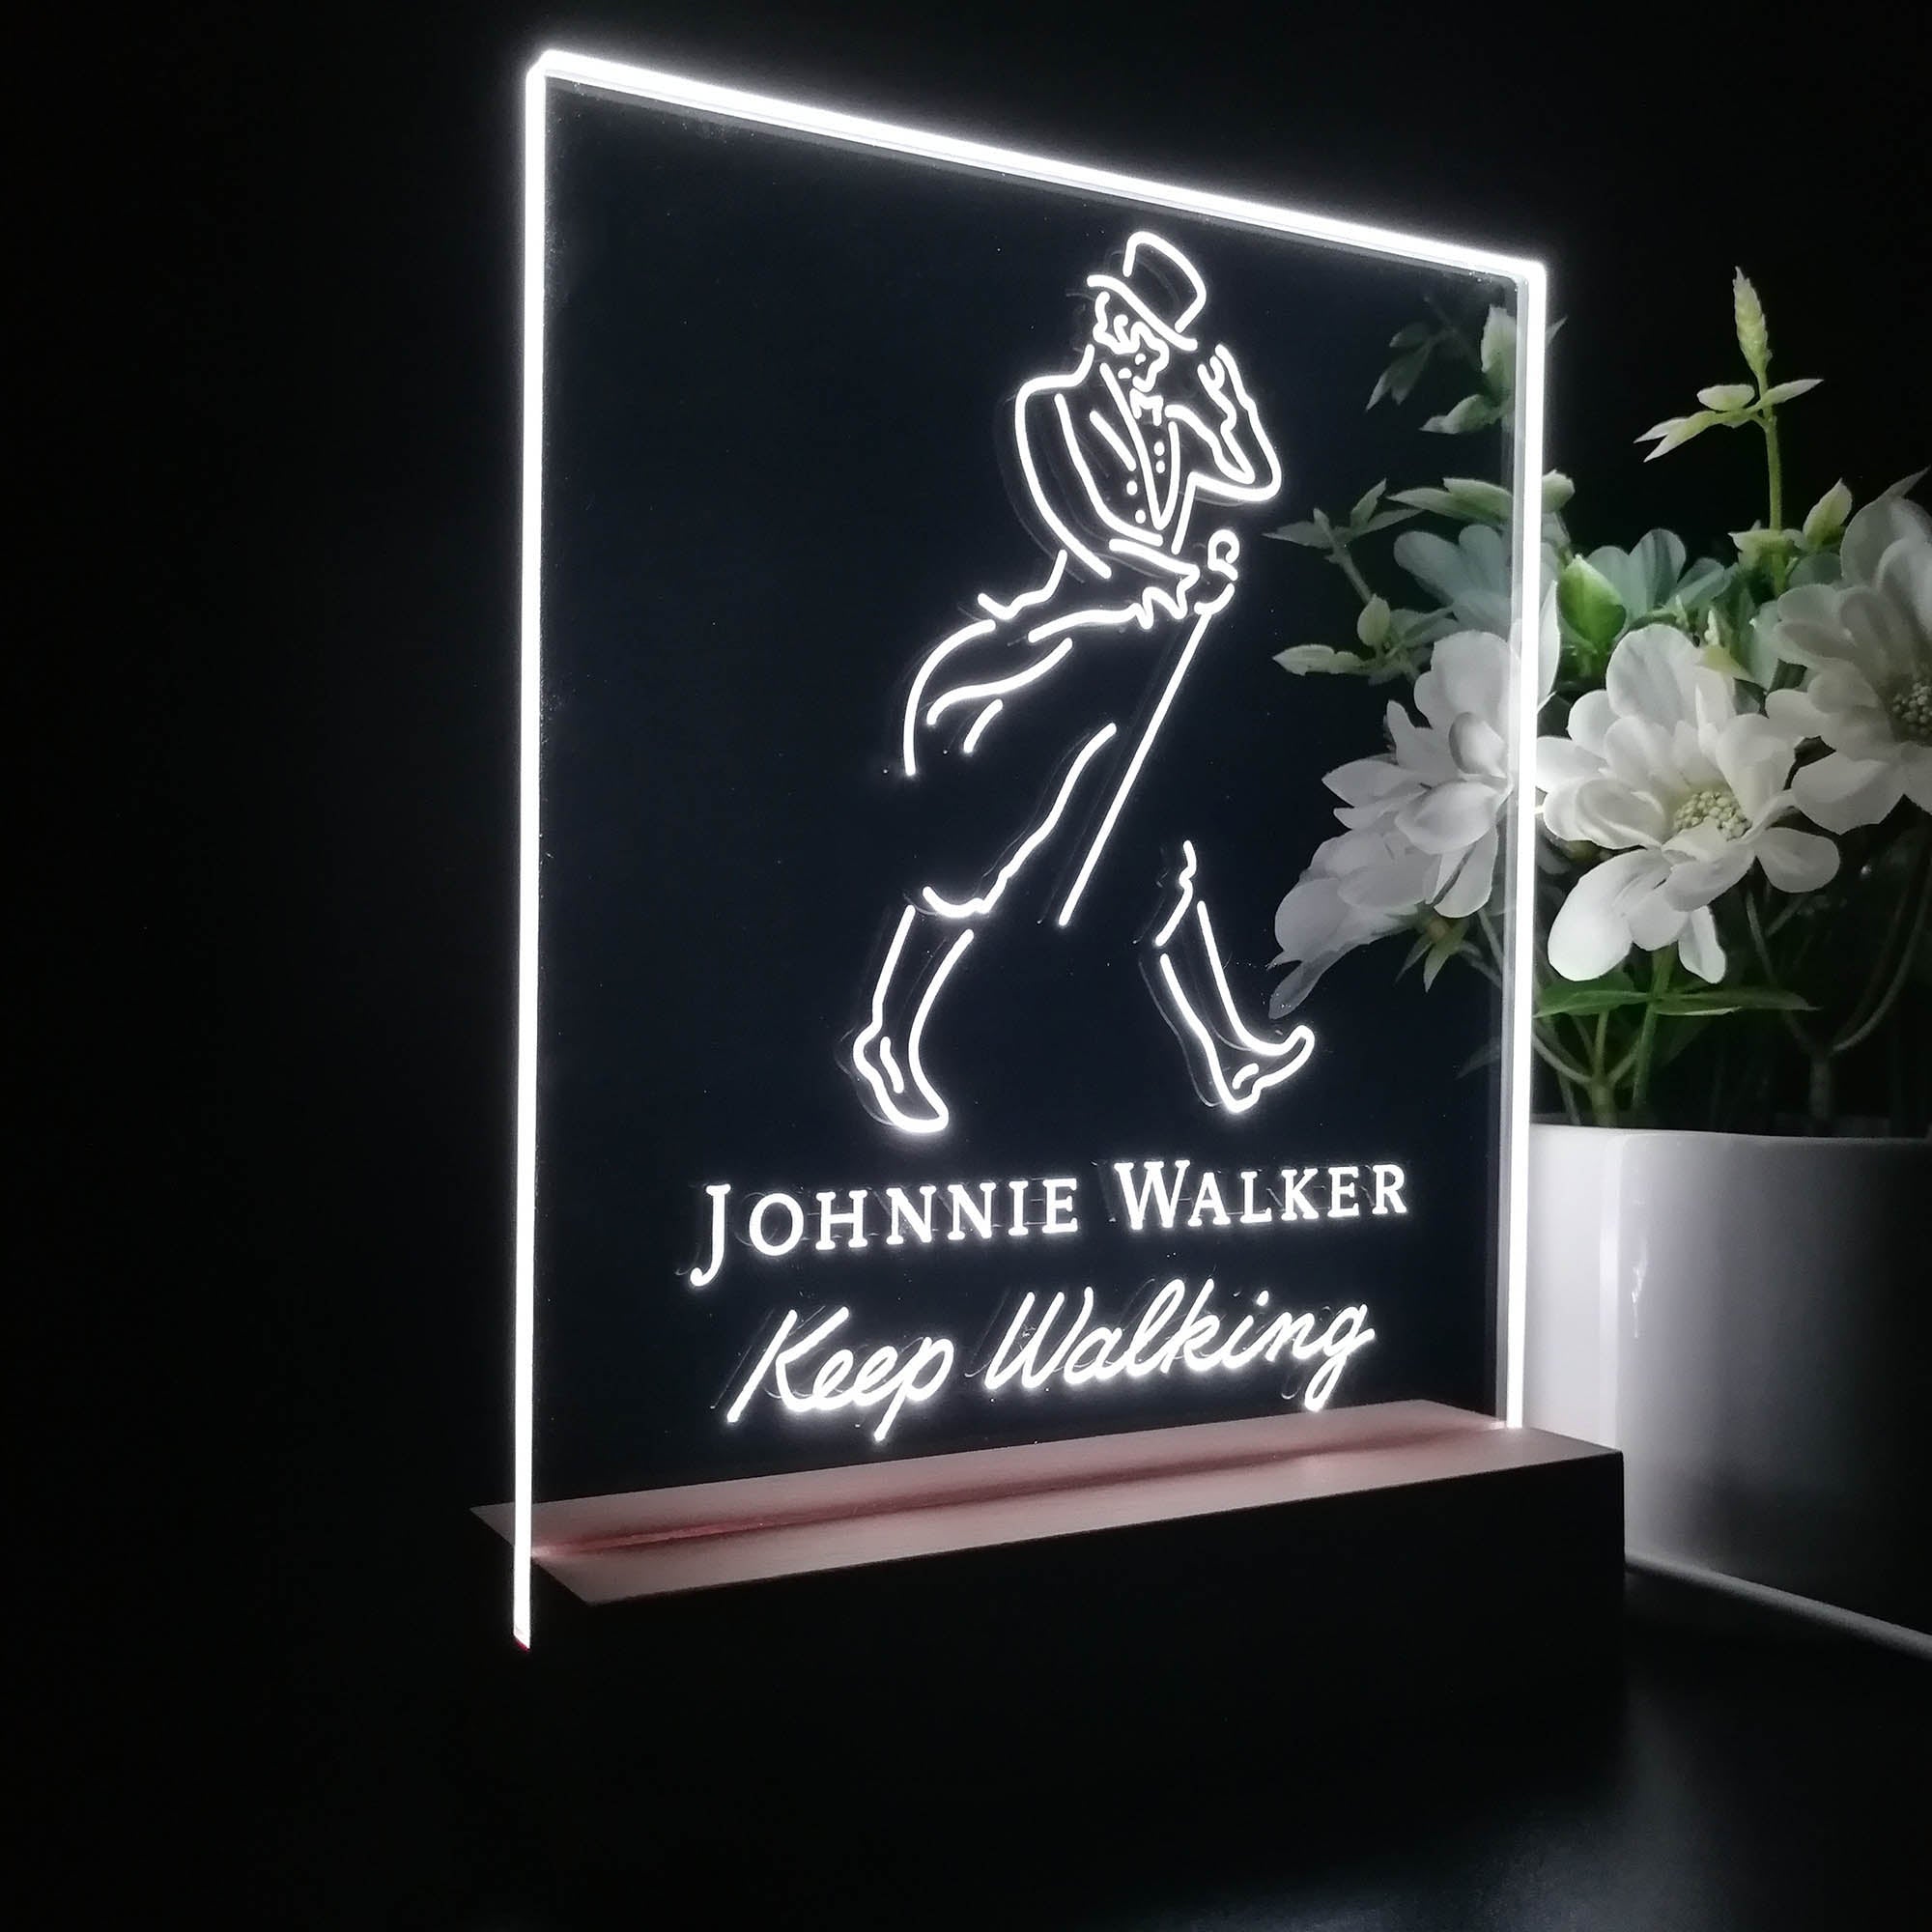 Jonnie Walker Night Light Neon Pub Bar Lamp